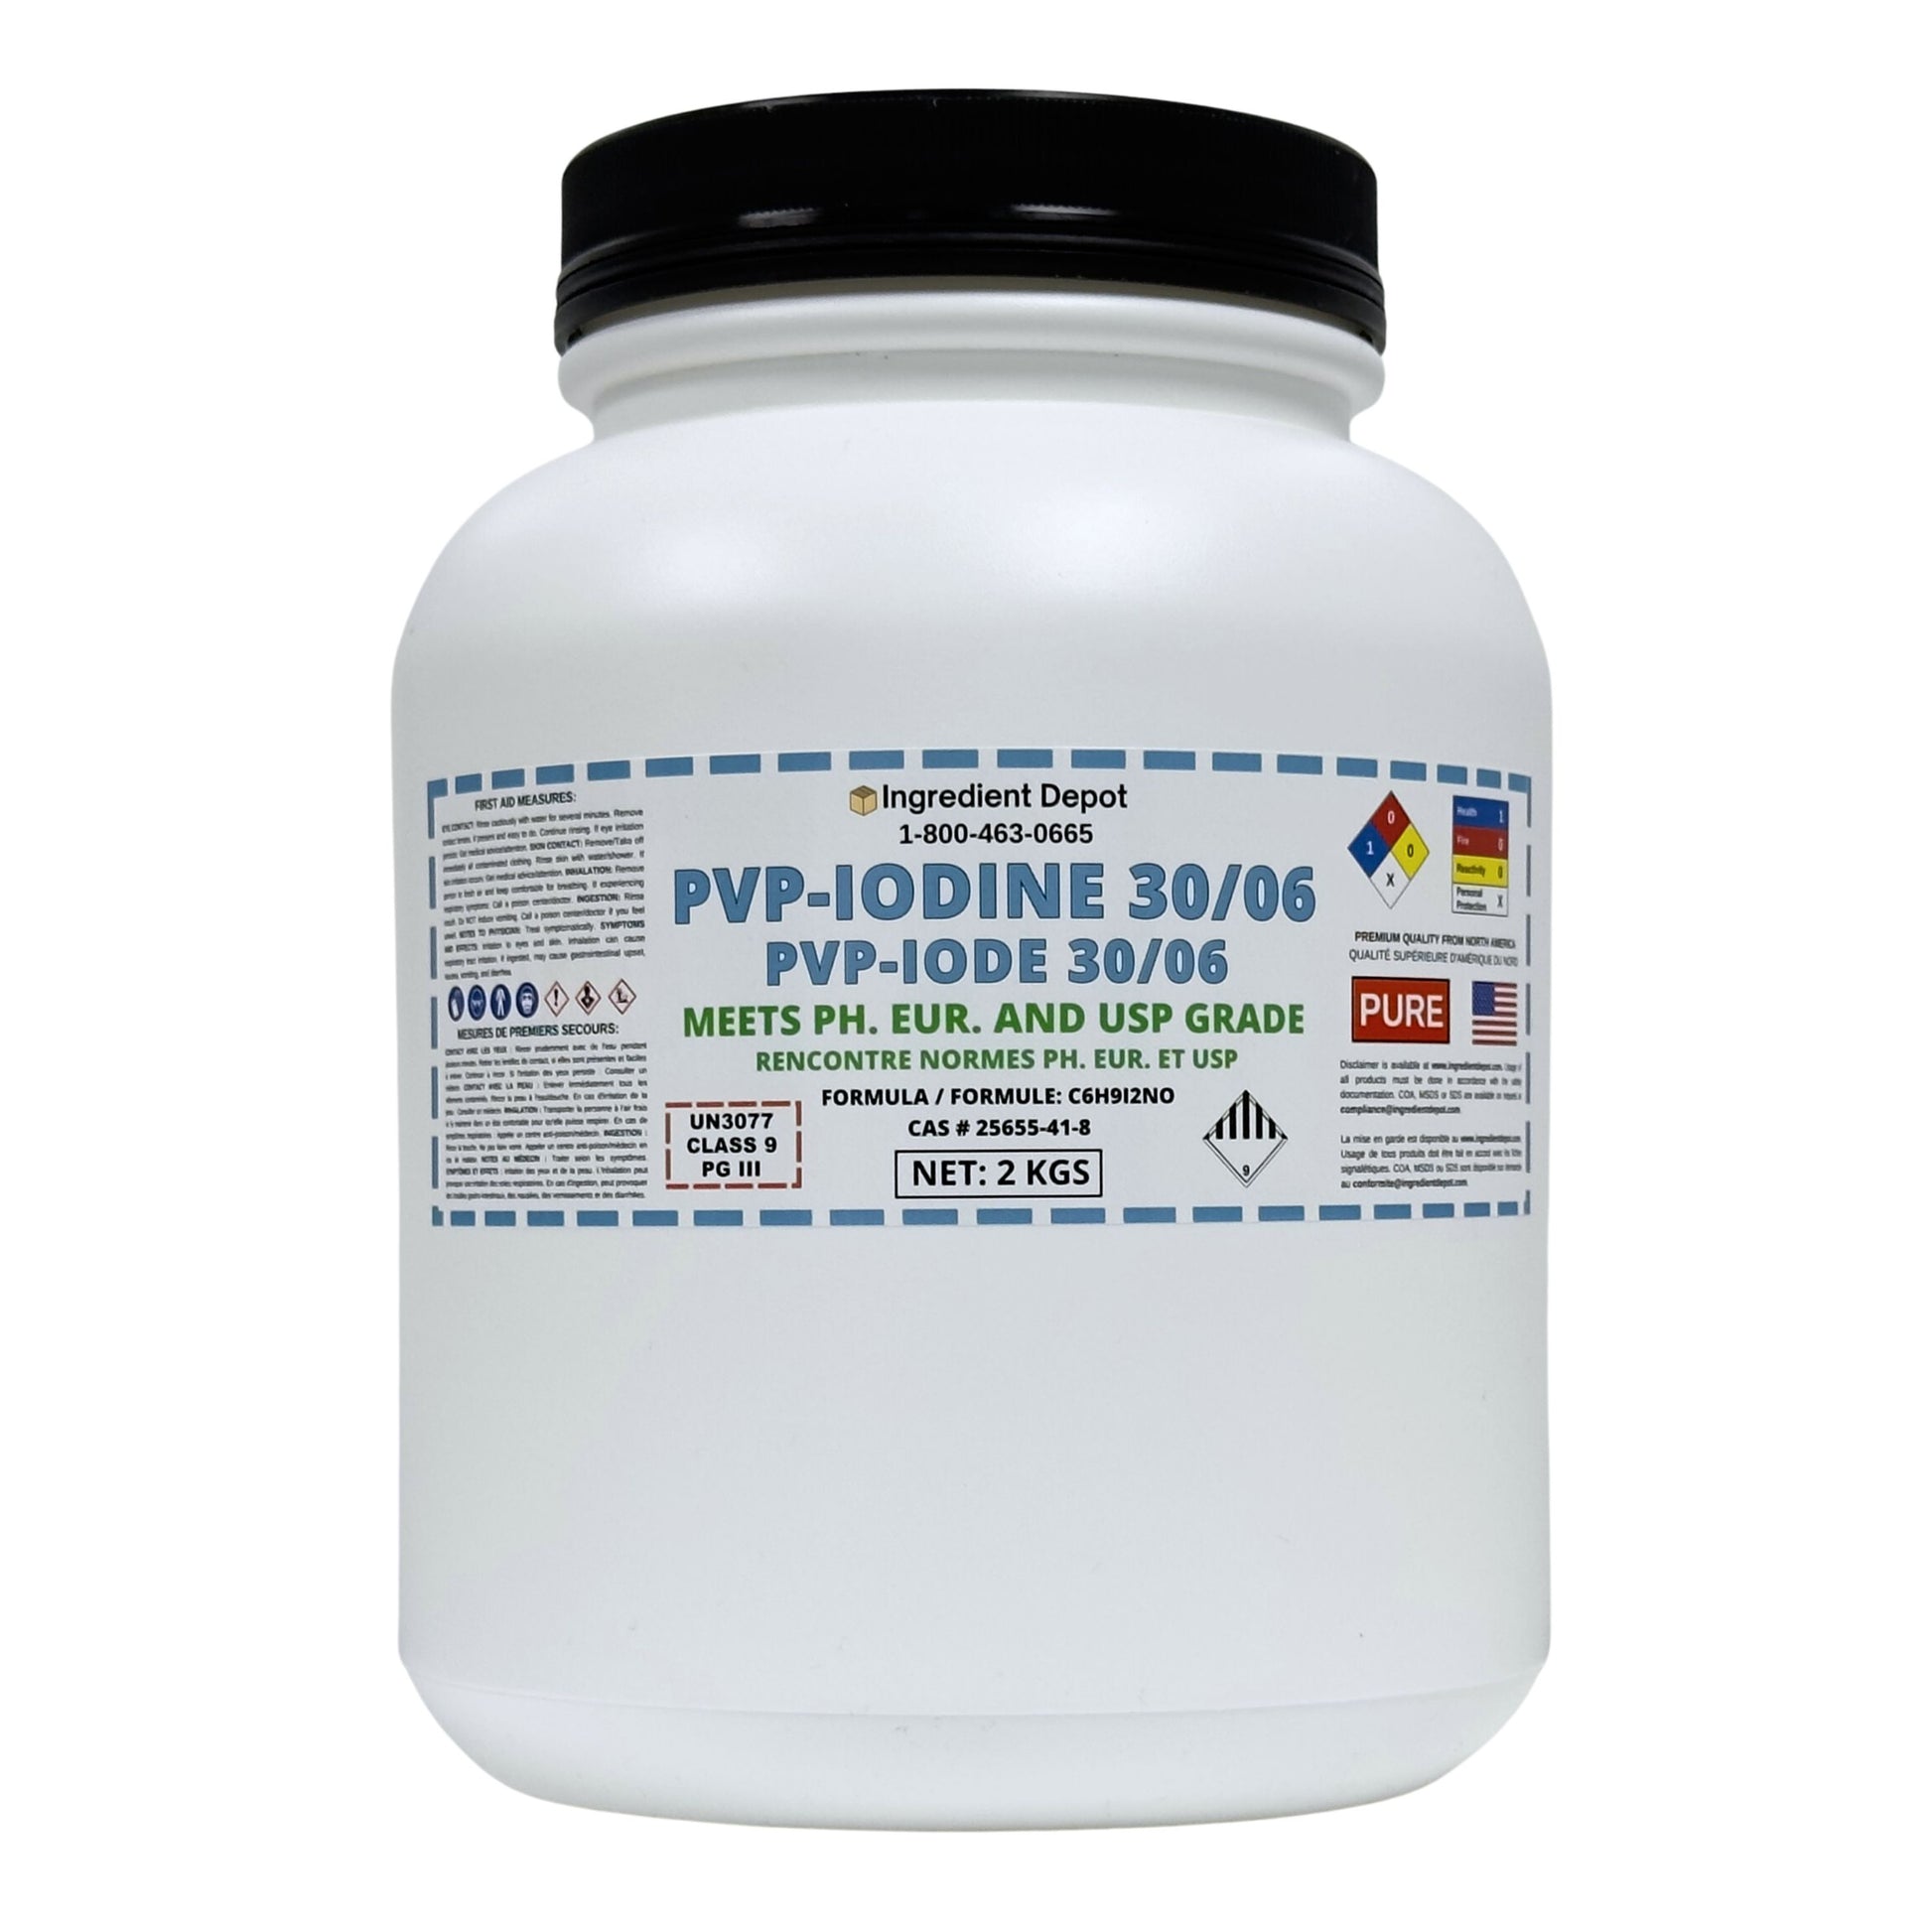 PVP-Iodine 30/06 (PVP-I, Povidone-Iodine) 2 kgs - IngredientDepot.com